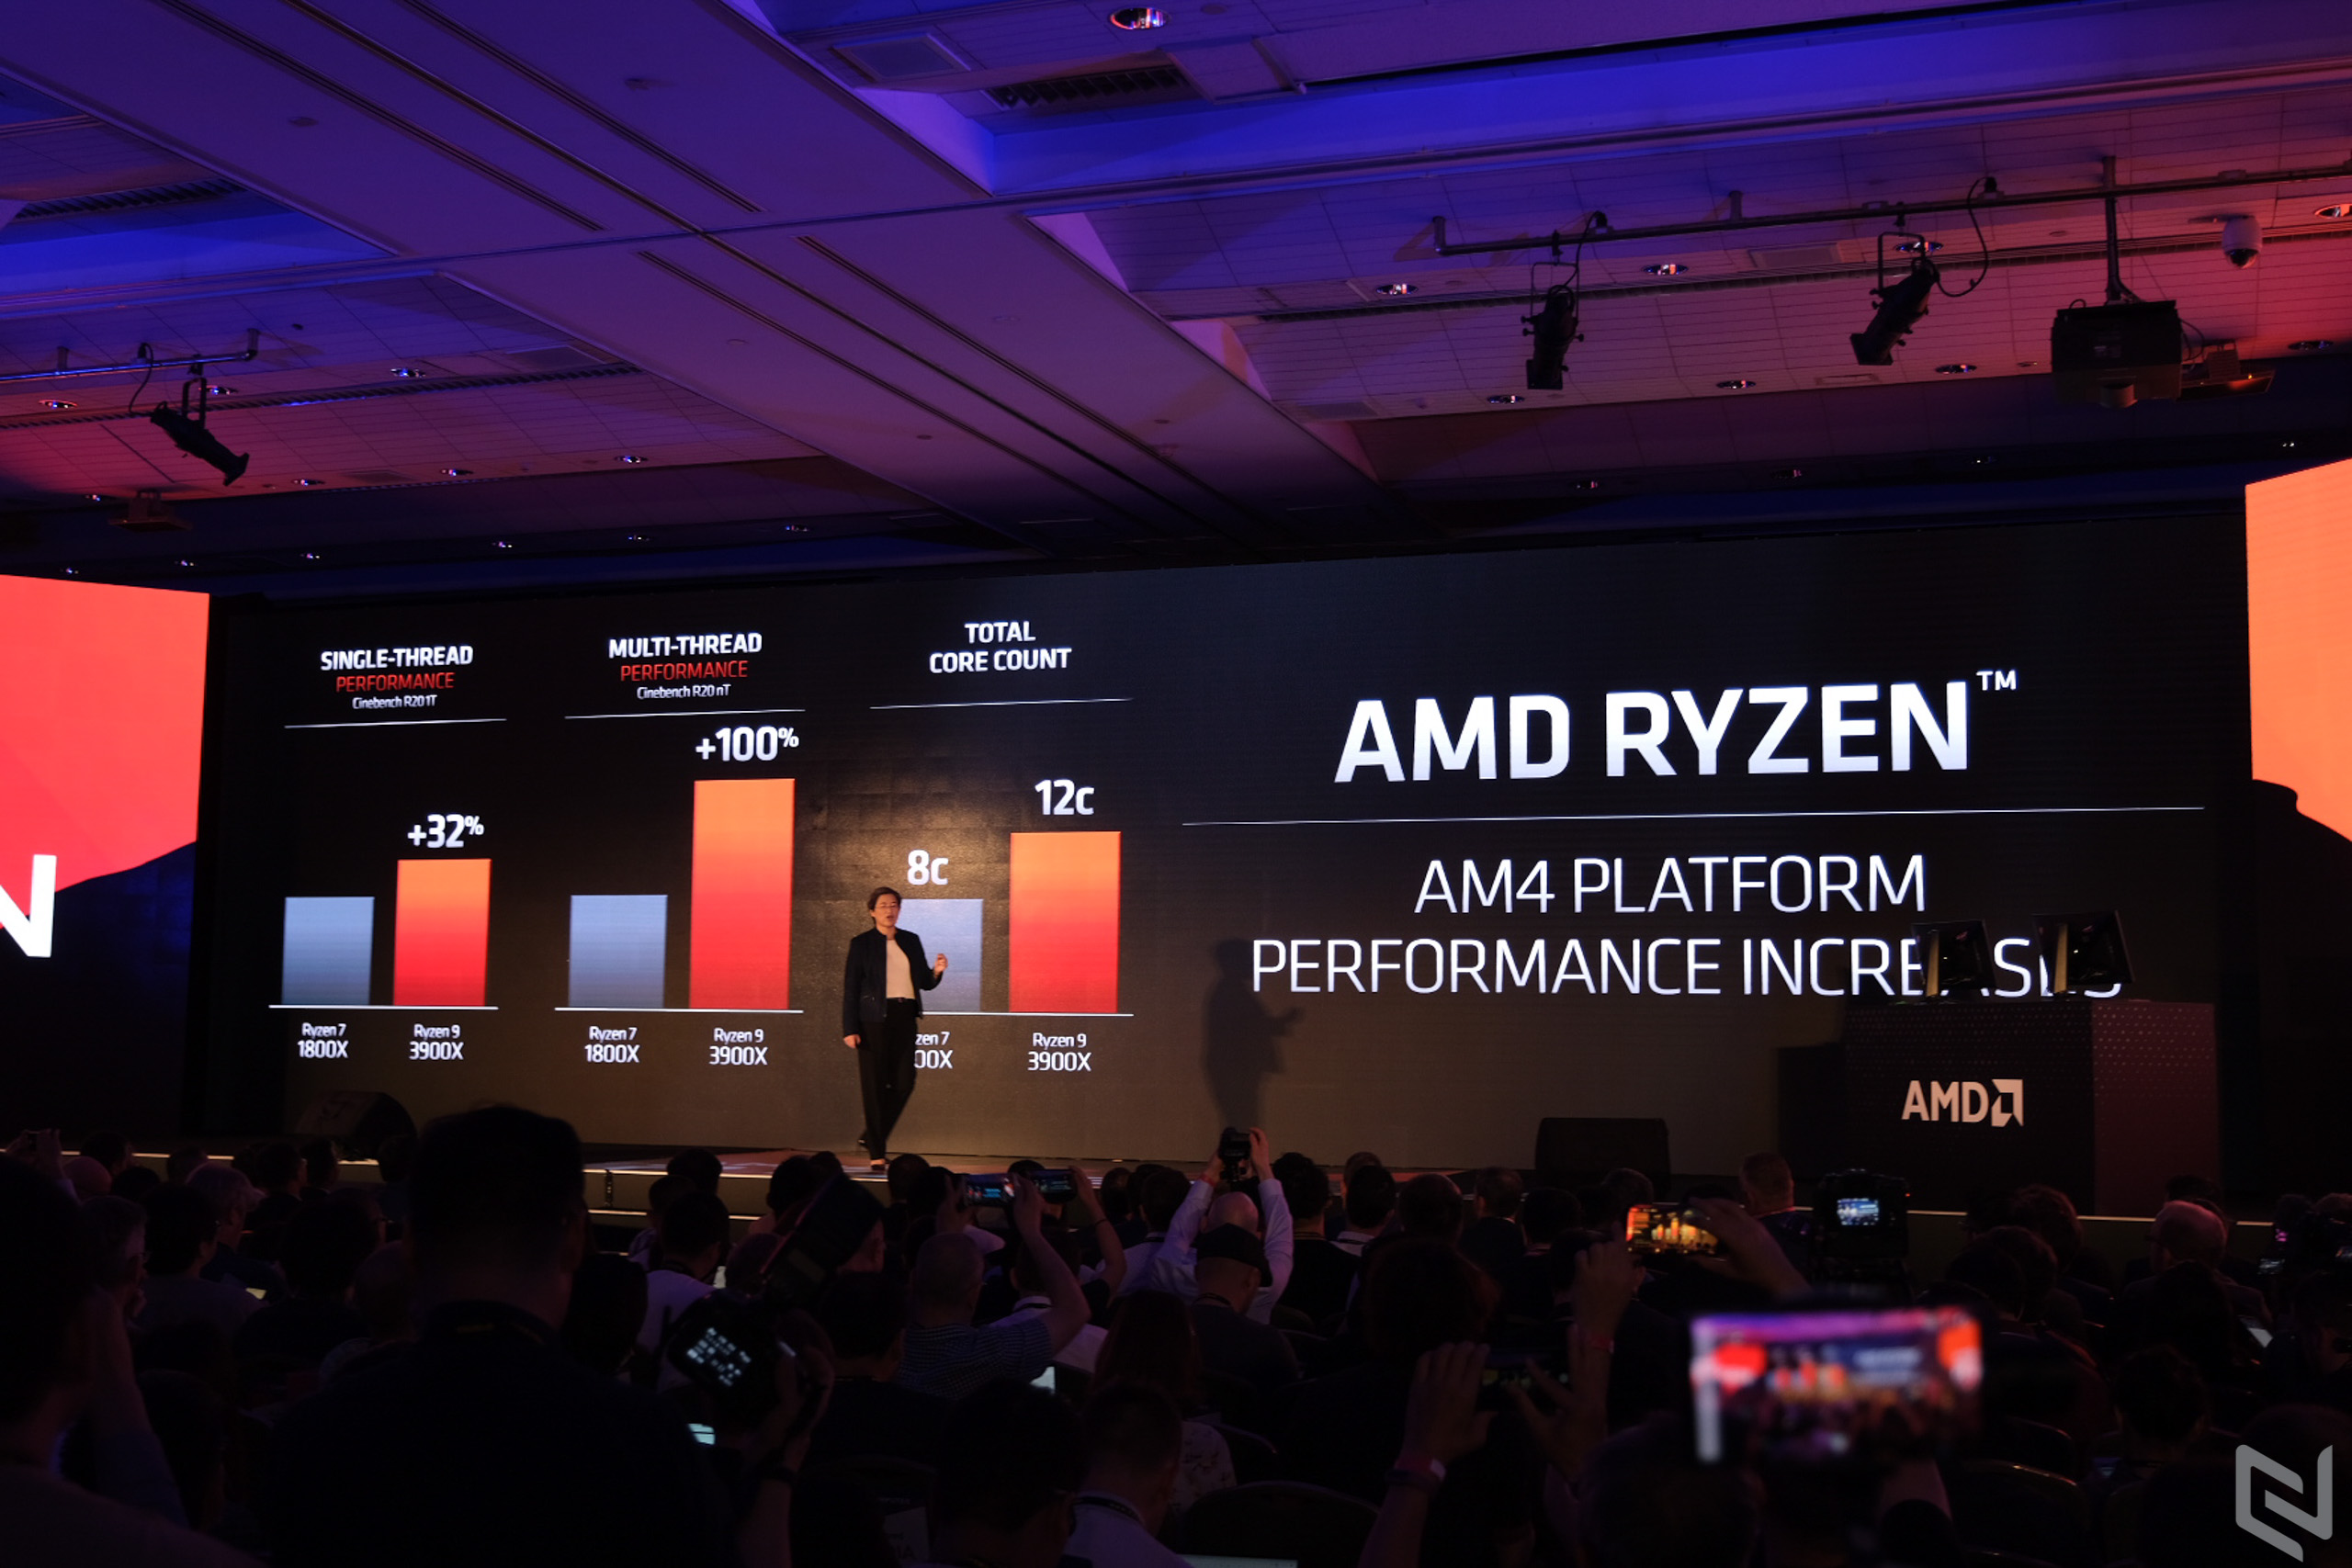 AMD giới thiệu Ryzen thế hệ 3 với CPU 12 nhân đầu tiên, giao tiếp PCIe 4.0 tại Computex 2019, giá từ 329 USD